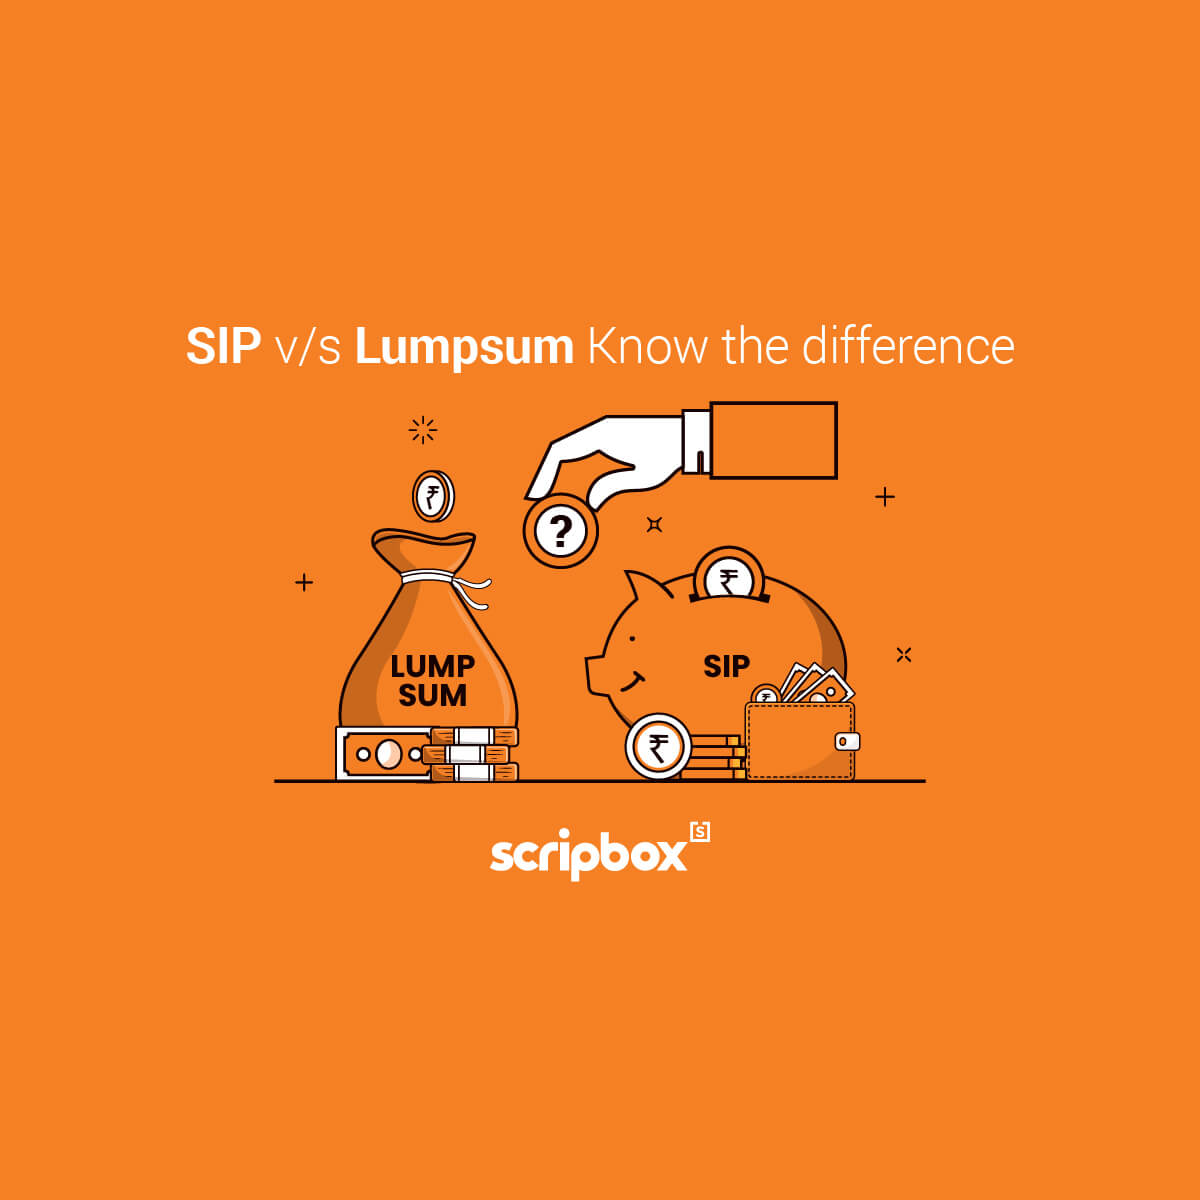 sip vs lumpsum